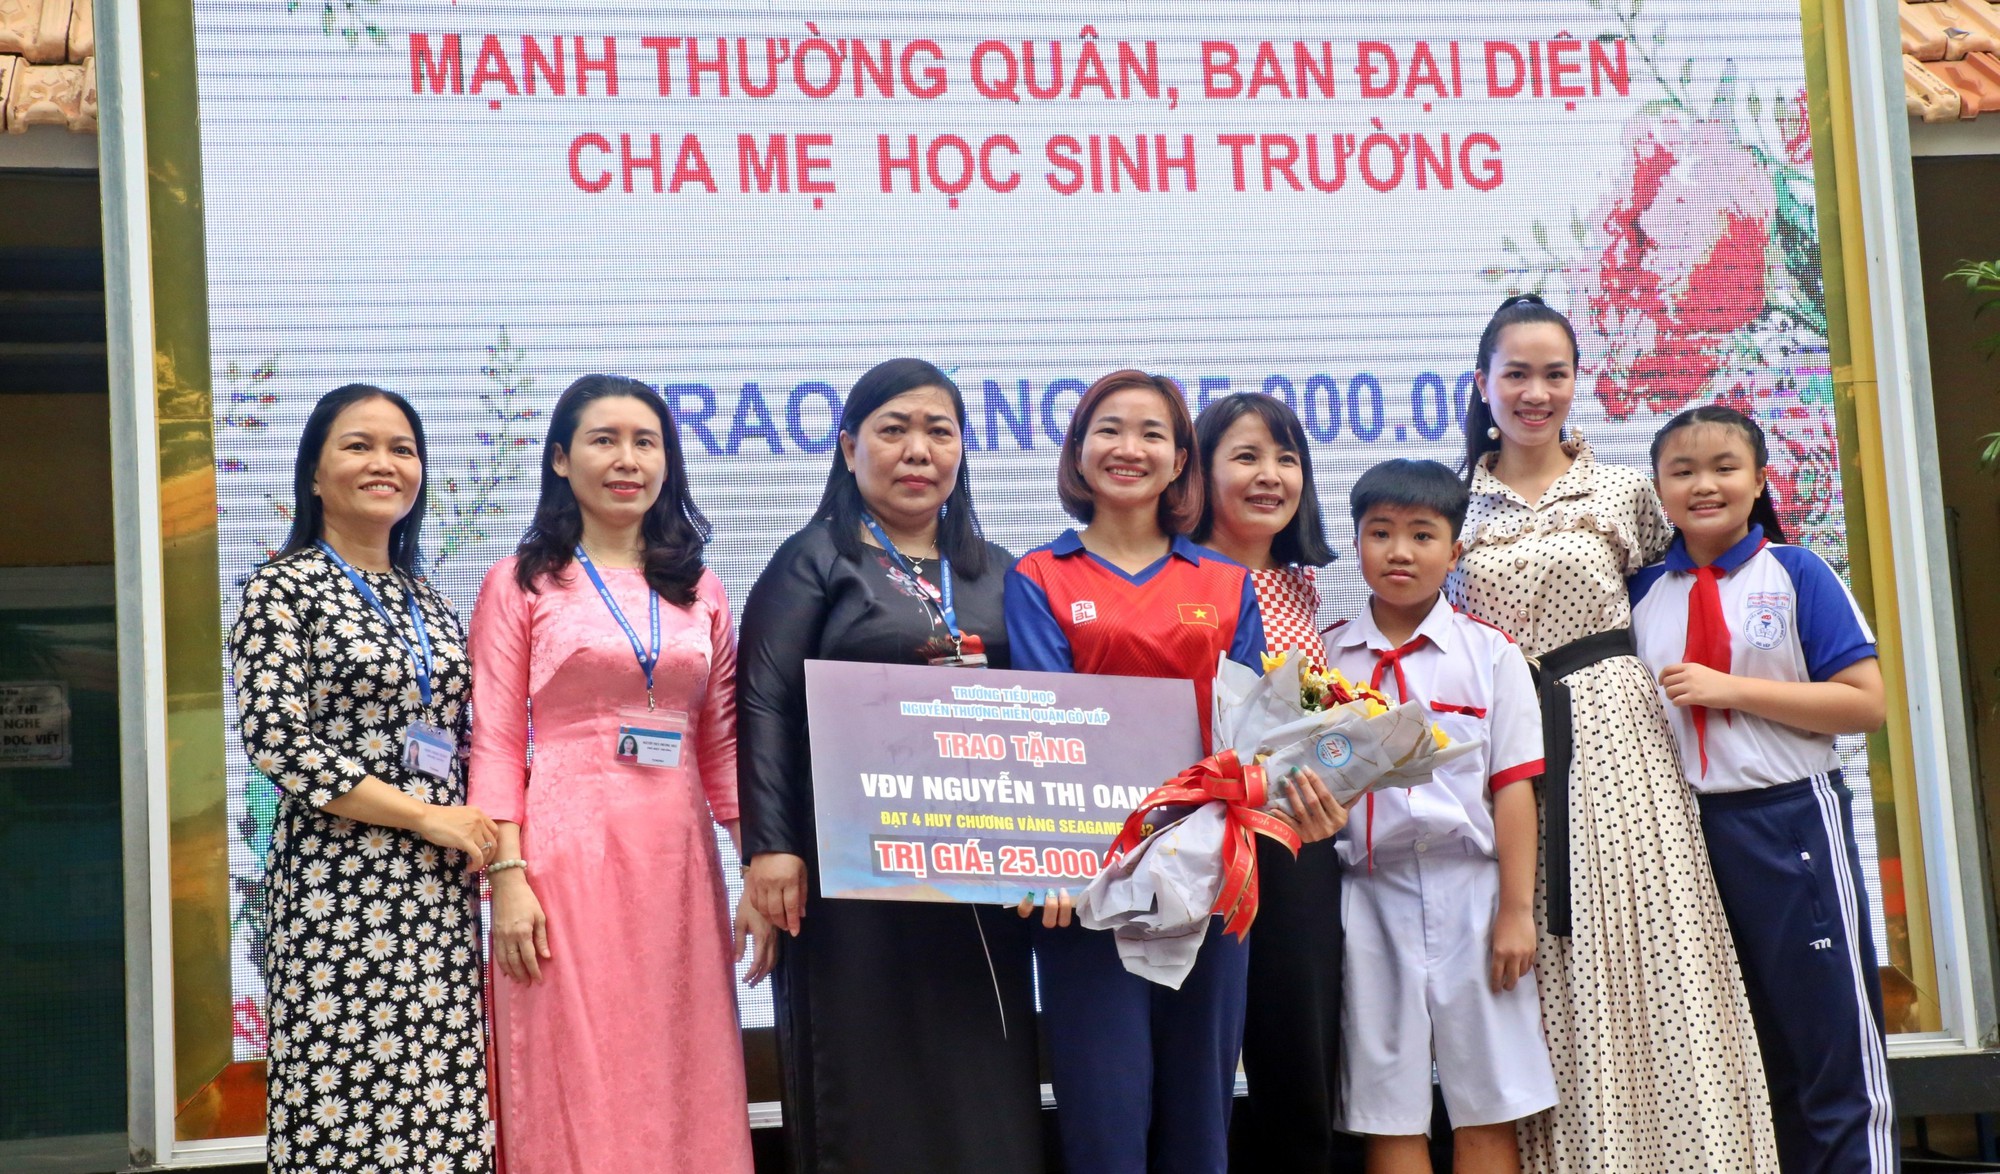 Nguyễn Thị Oanh đến truyền cảm hứng cho các bạn nhỏ trường Nguyễn Thượng Hiền, TP.HCM - Ảnh 7.